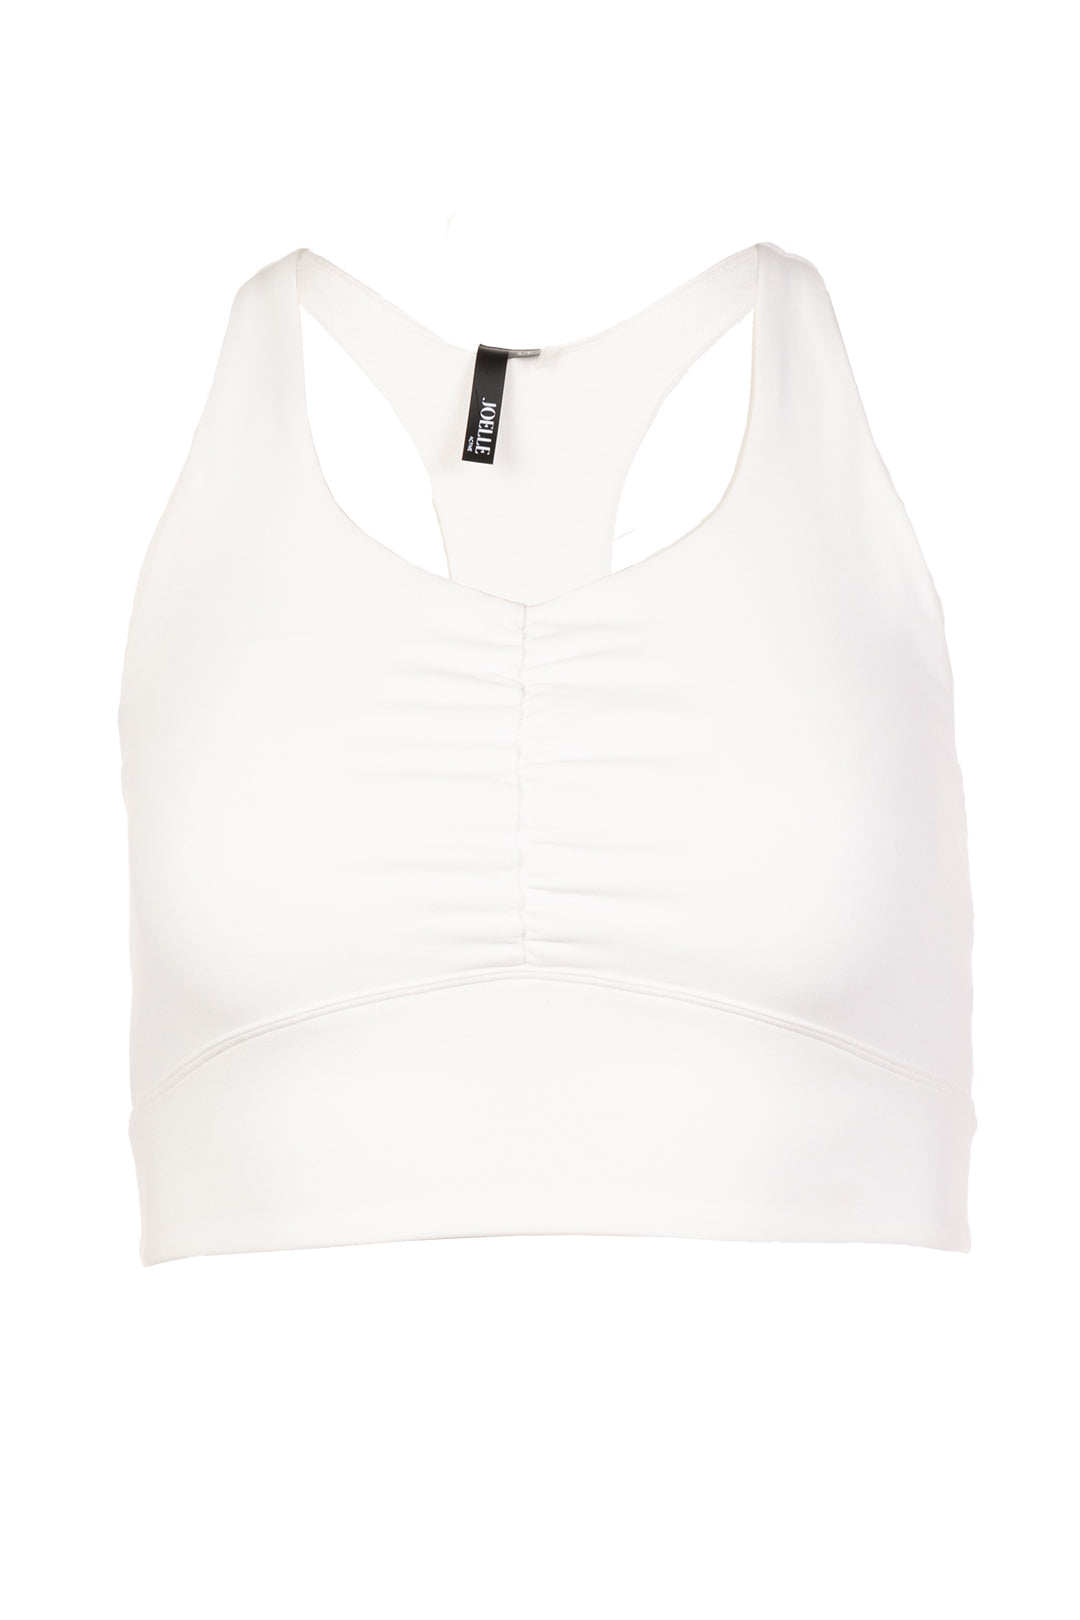 Long white sports bra | Amelia